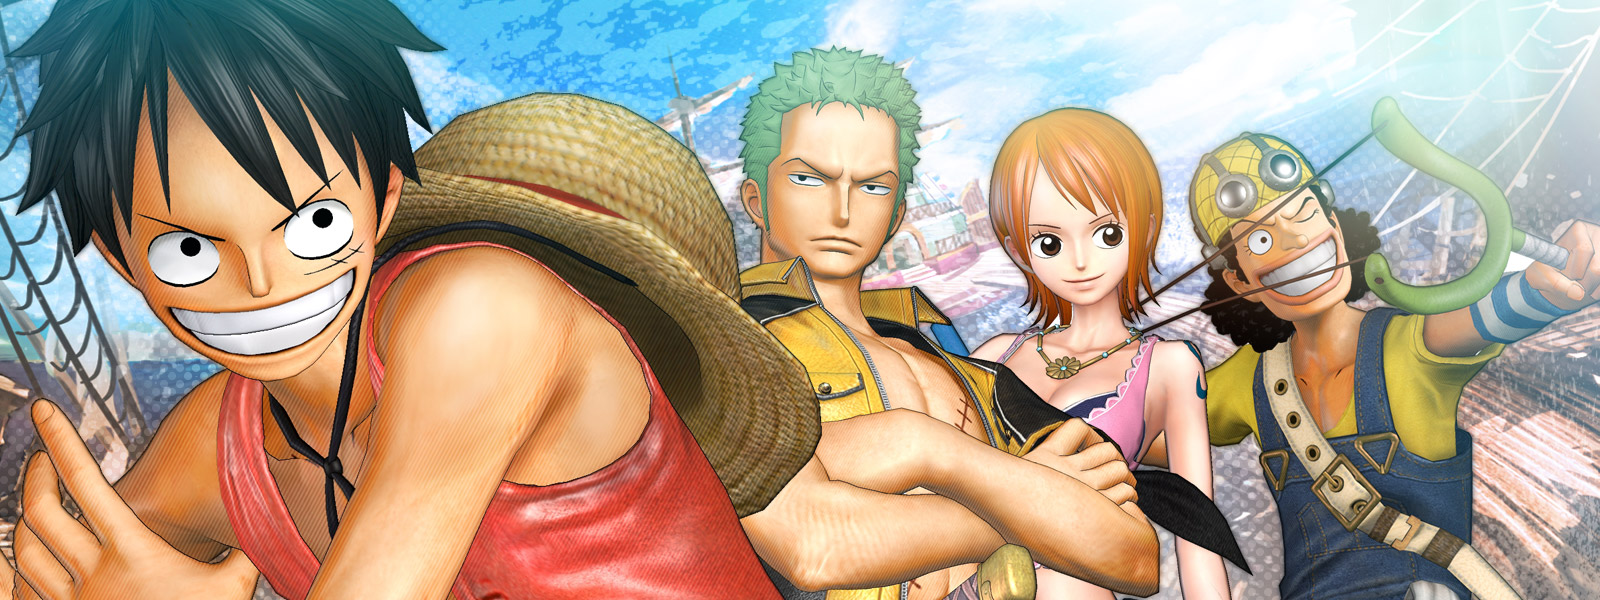 Hình ảnh One Piece rất đẹp